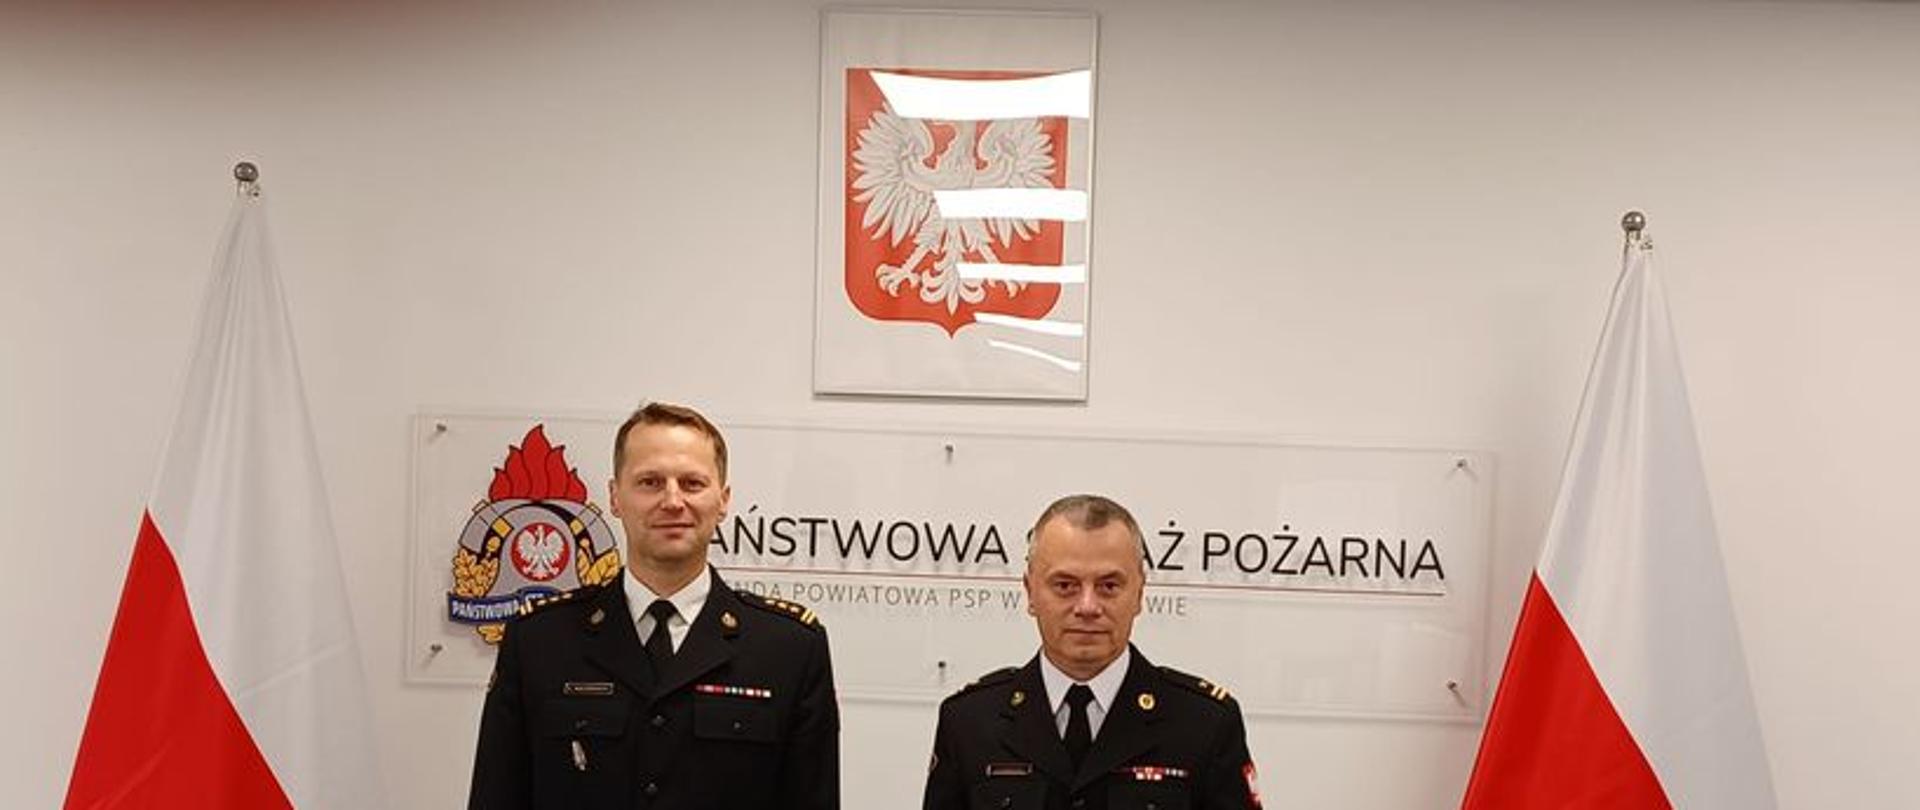 Komendant Powiatowy PSP w Człuchowie wraz z mianowanym Dowódcą Jednostki Ratowniczo-Gaśniczej stojący pomiędzy flagami Polski, w tle logo z nazwą Komendy Powiatowej PSP.